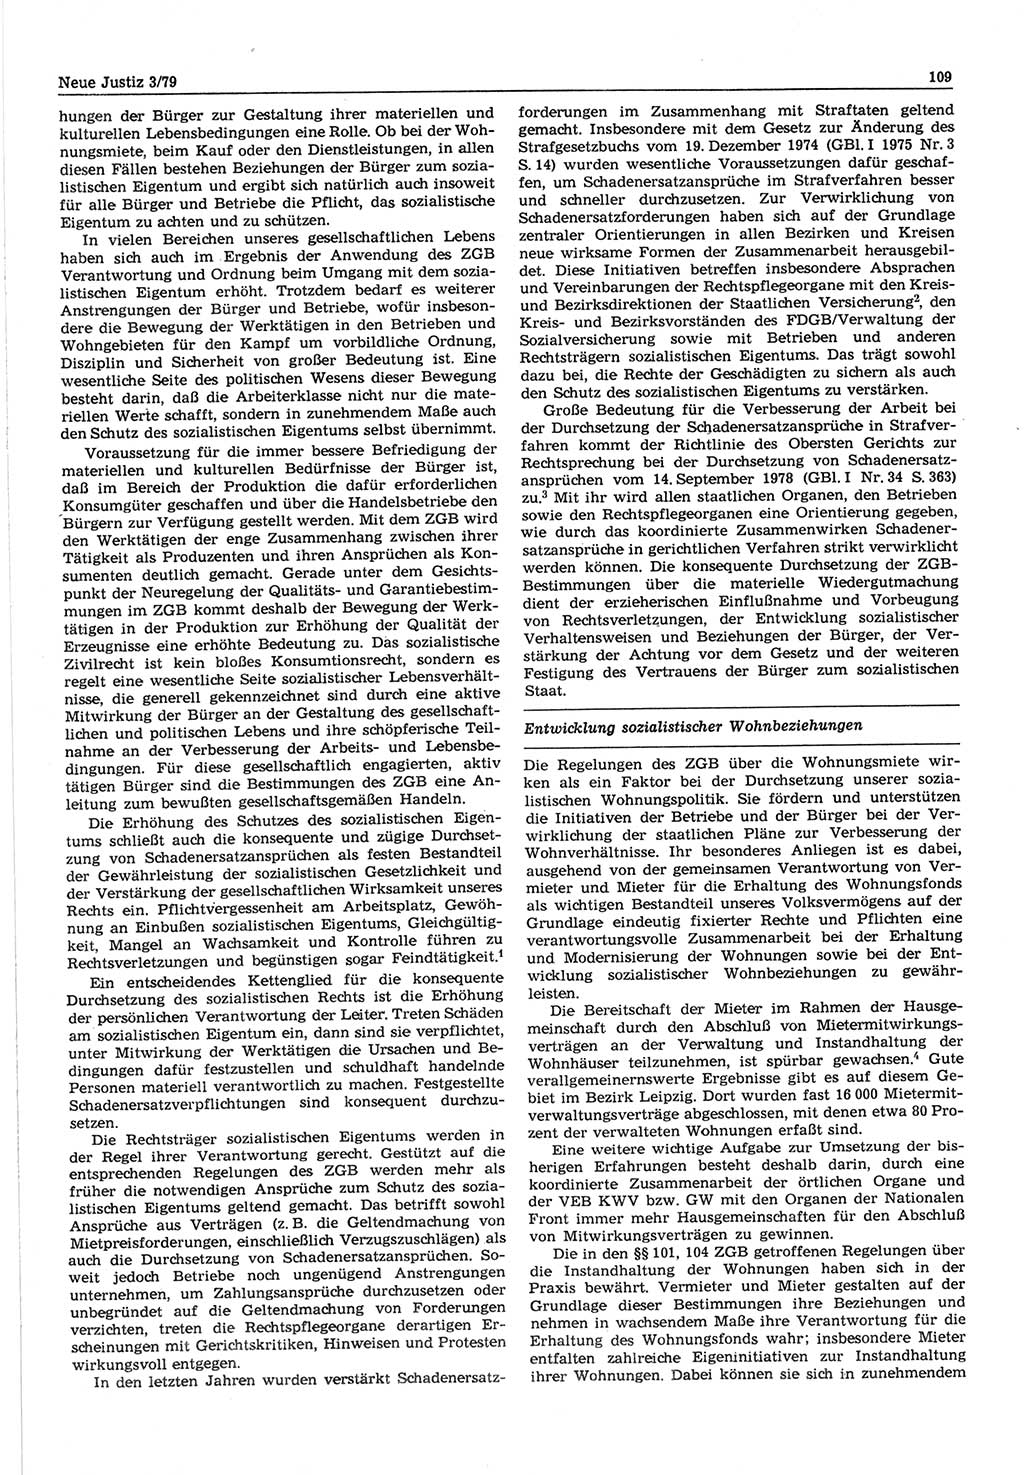 Neue Justiz (NJ), Zeitschrift für sozialistisches Recht und Gesetzlichkeit [Deutsche Demokratische Republik (DDR)], 33. Jahrgang 1979, Seite 109 (NJ DDR 1979, S. 109)